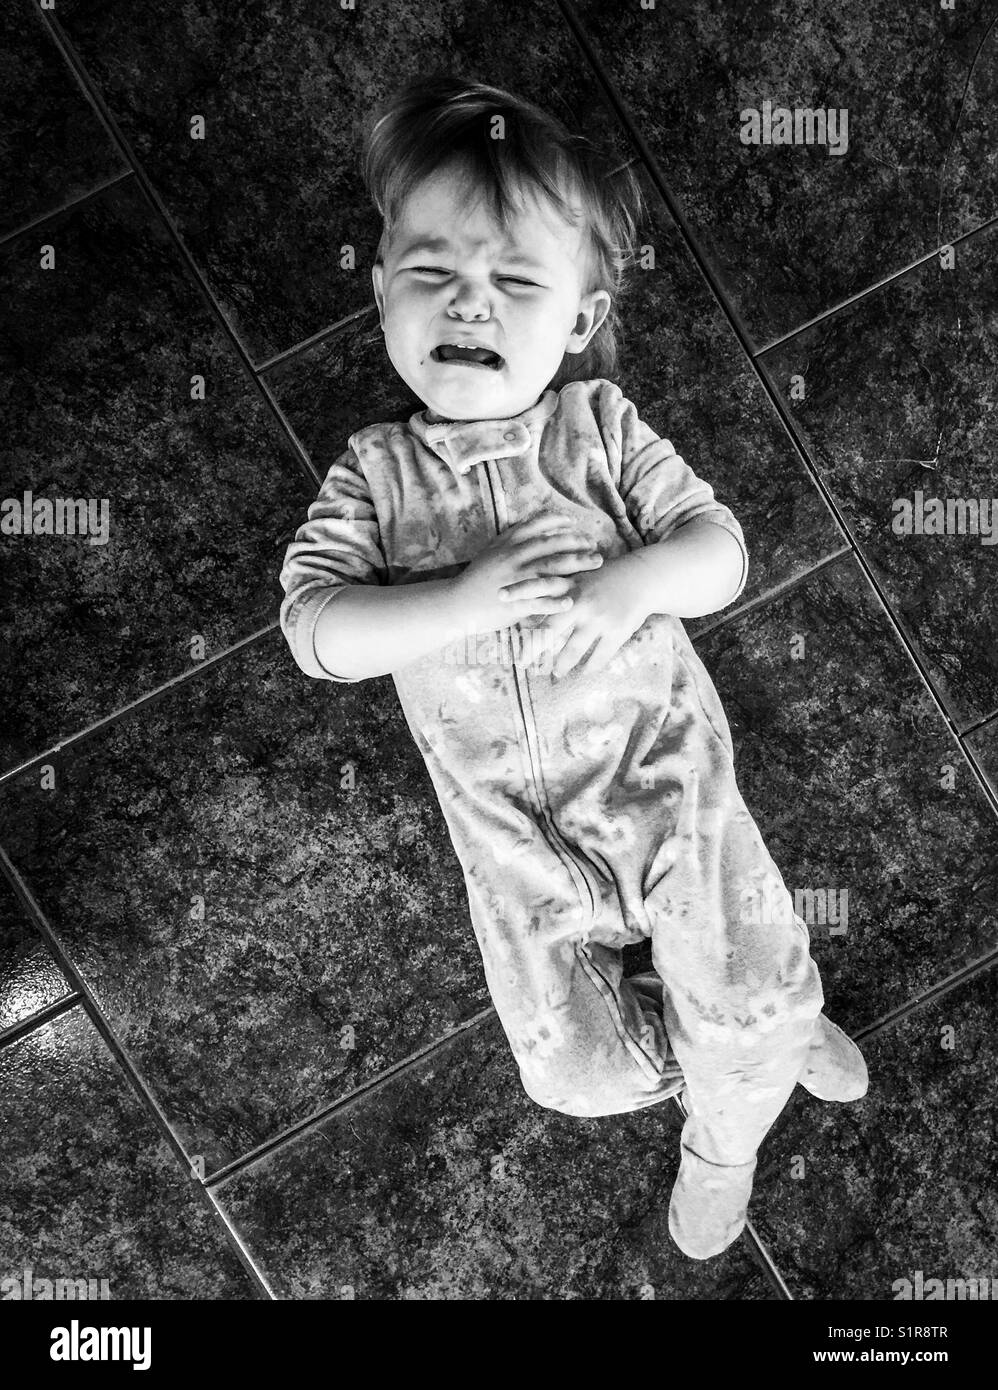 Schwarz-weiß Bild von Toddler weinend auf einem gefliesten Boden Stockfoto